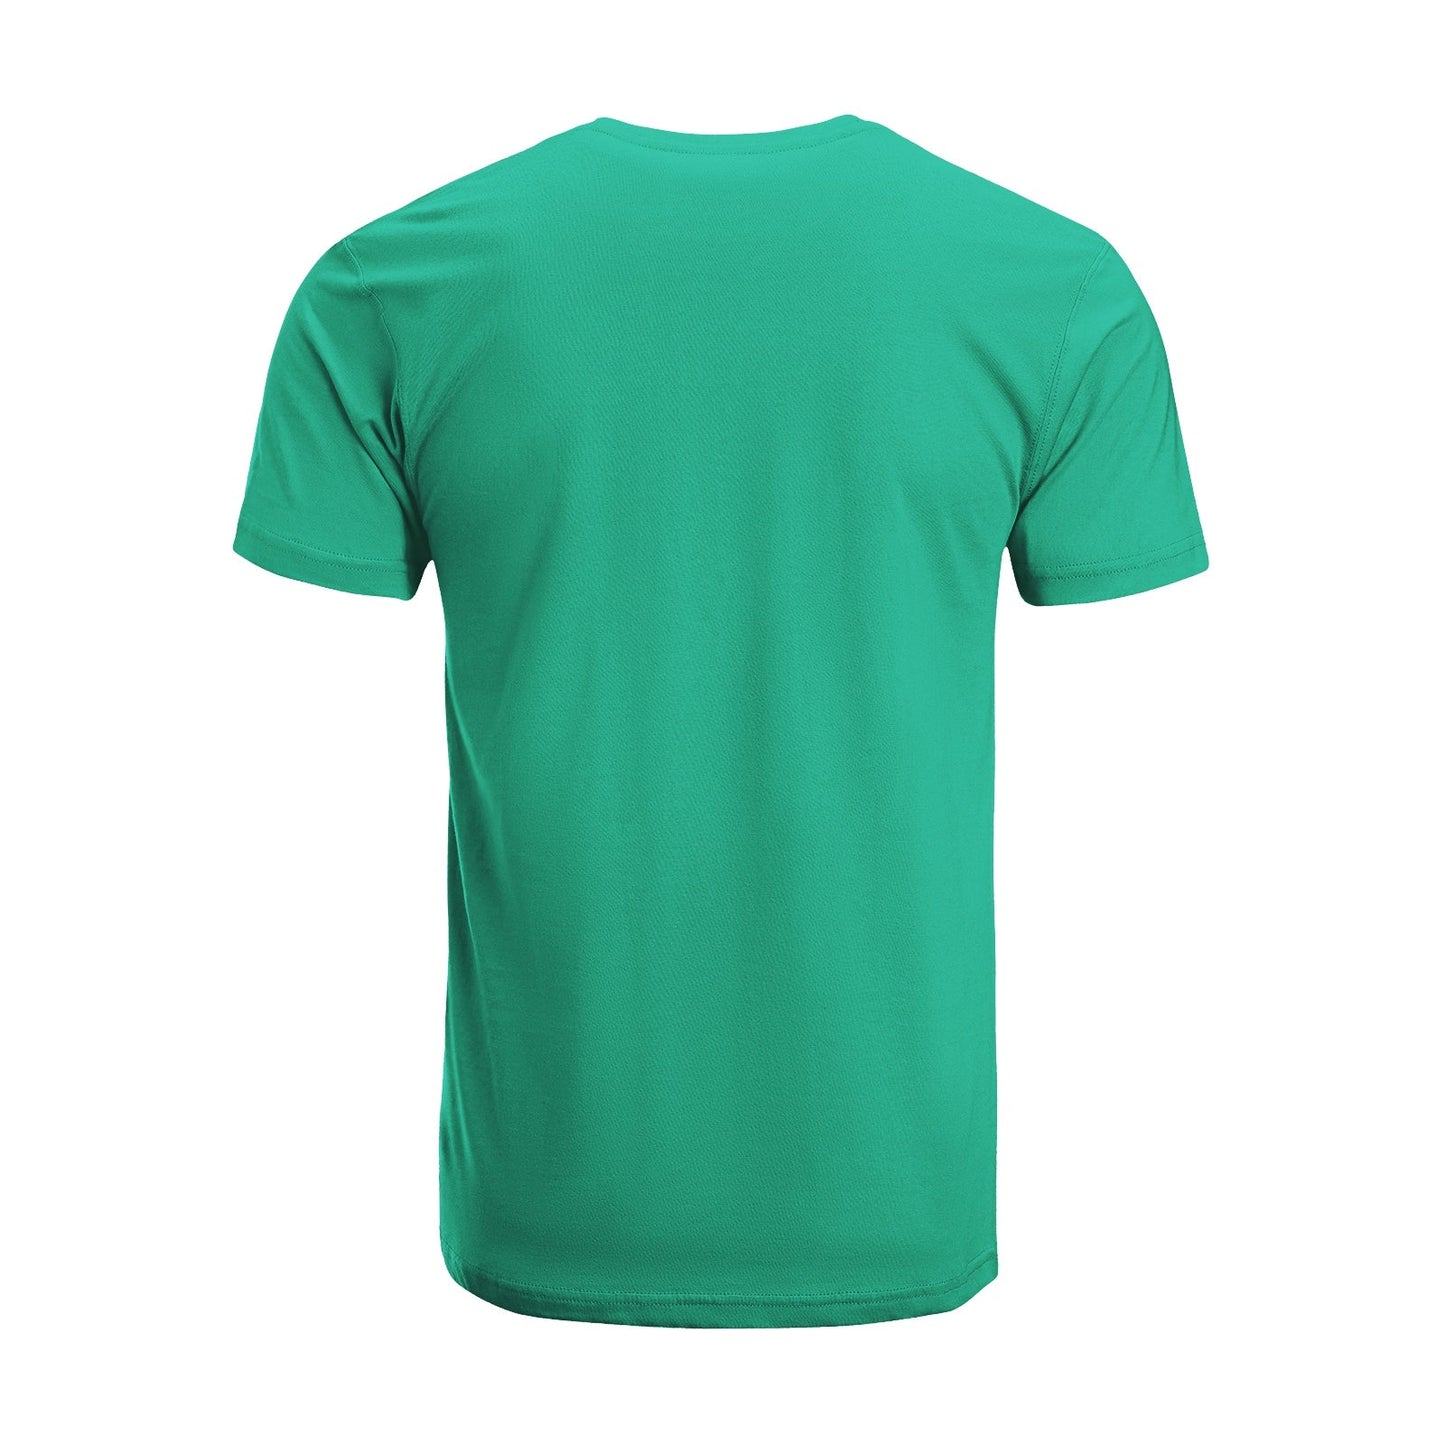 Unisex Short Sleeve Crew Neck Cotton Jersey T-Shirt TRUCK 20